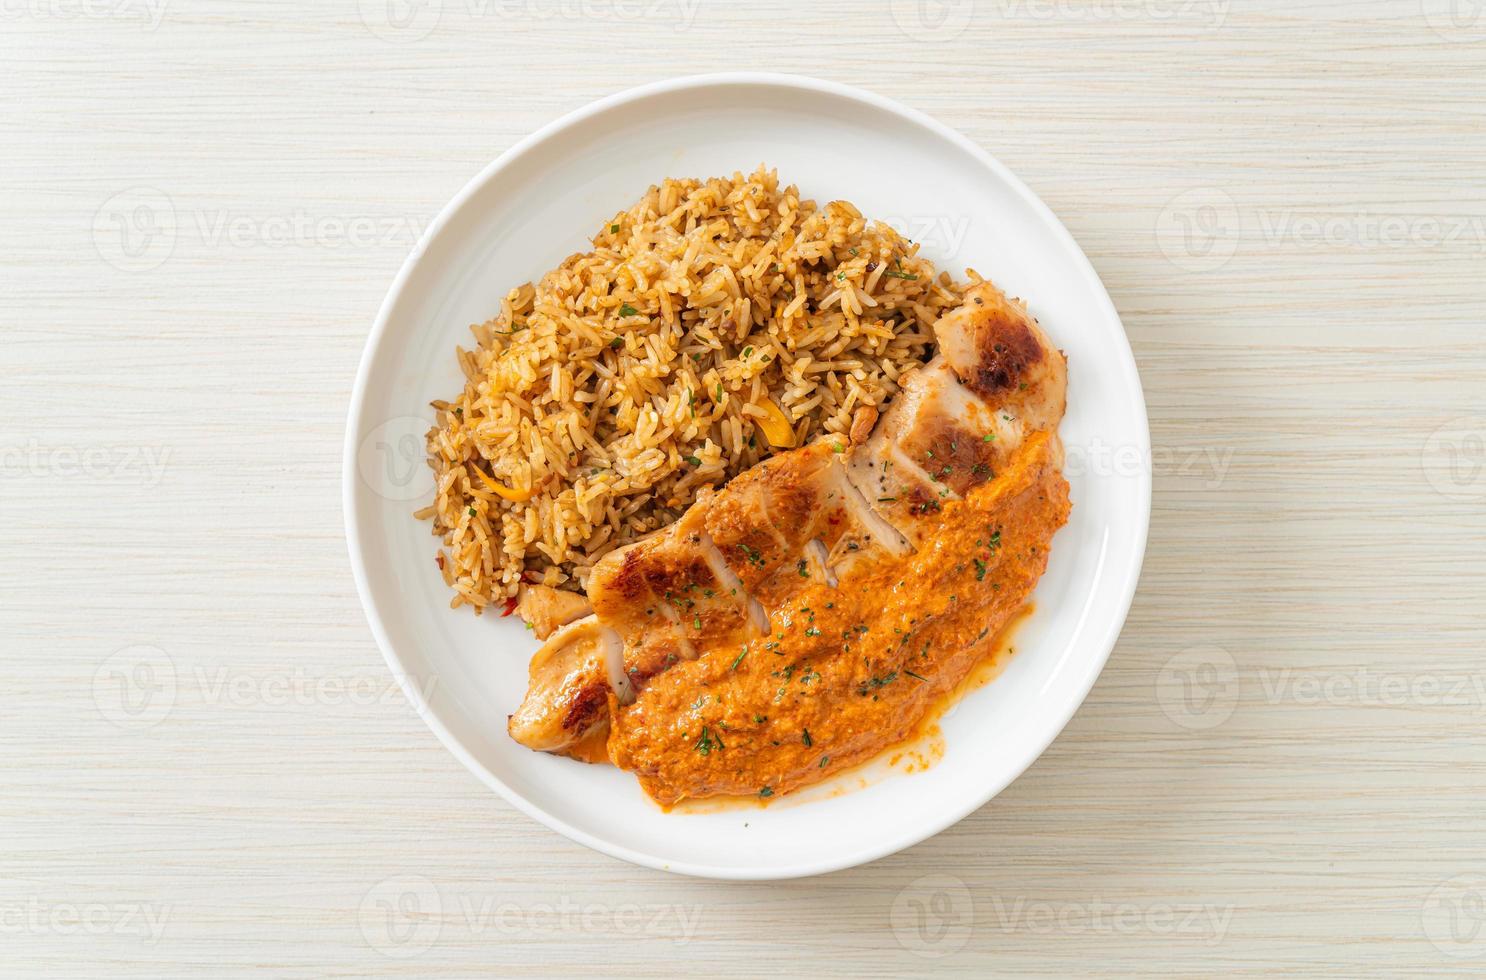 gegrilltes Hühnersteak mit roter Currysauce und Reis foto